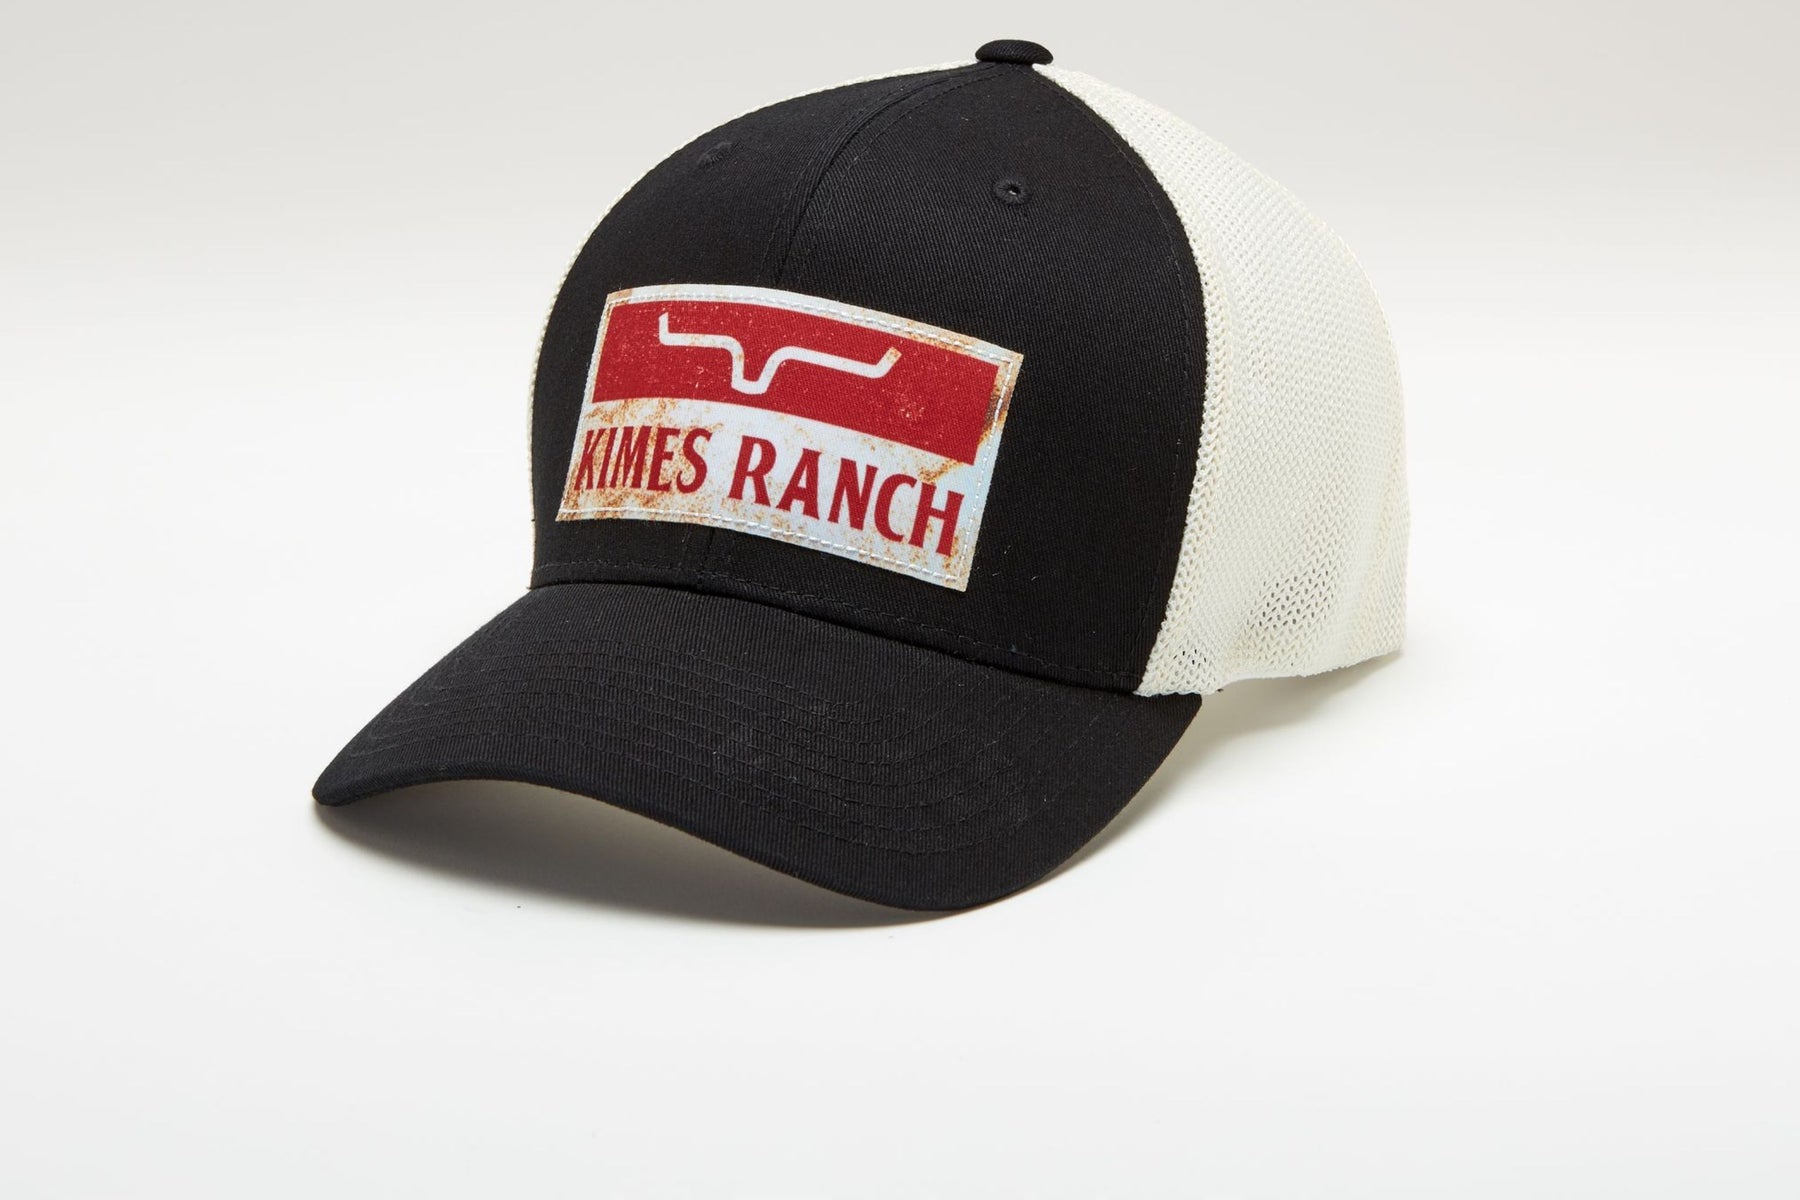 110 Fire Ex Trucker Hat - Hat - Kimes Ranch